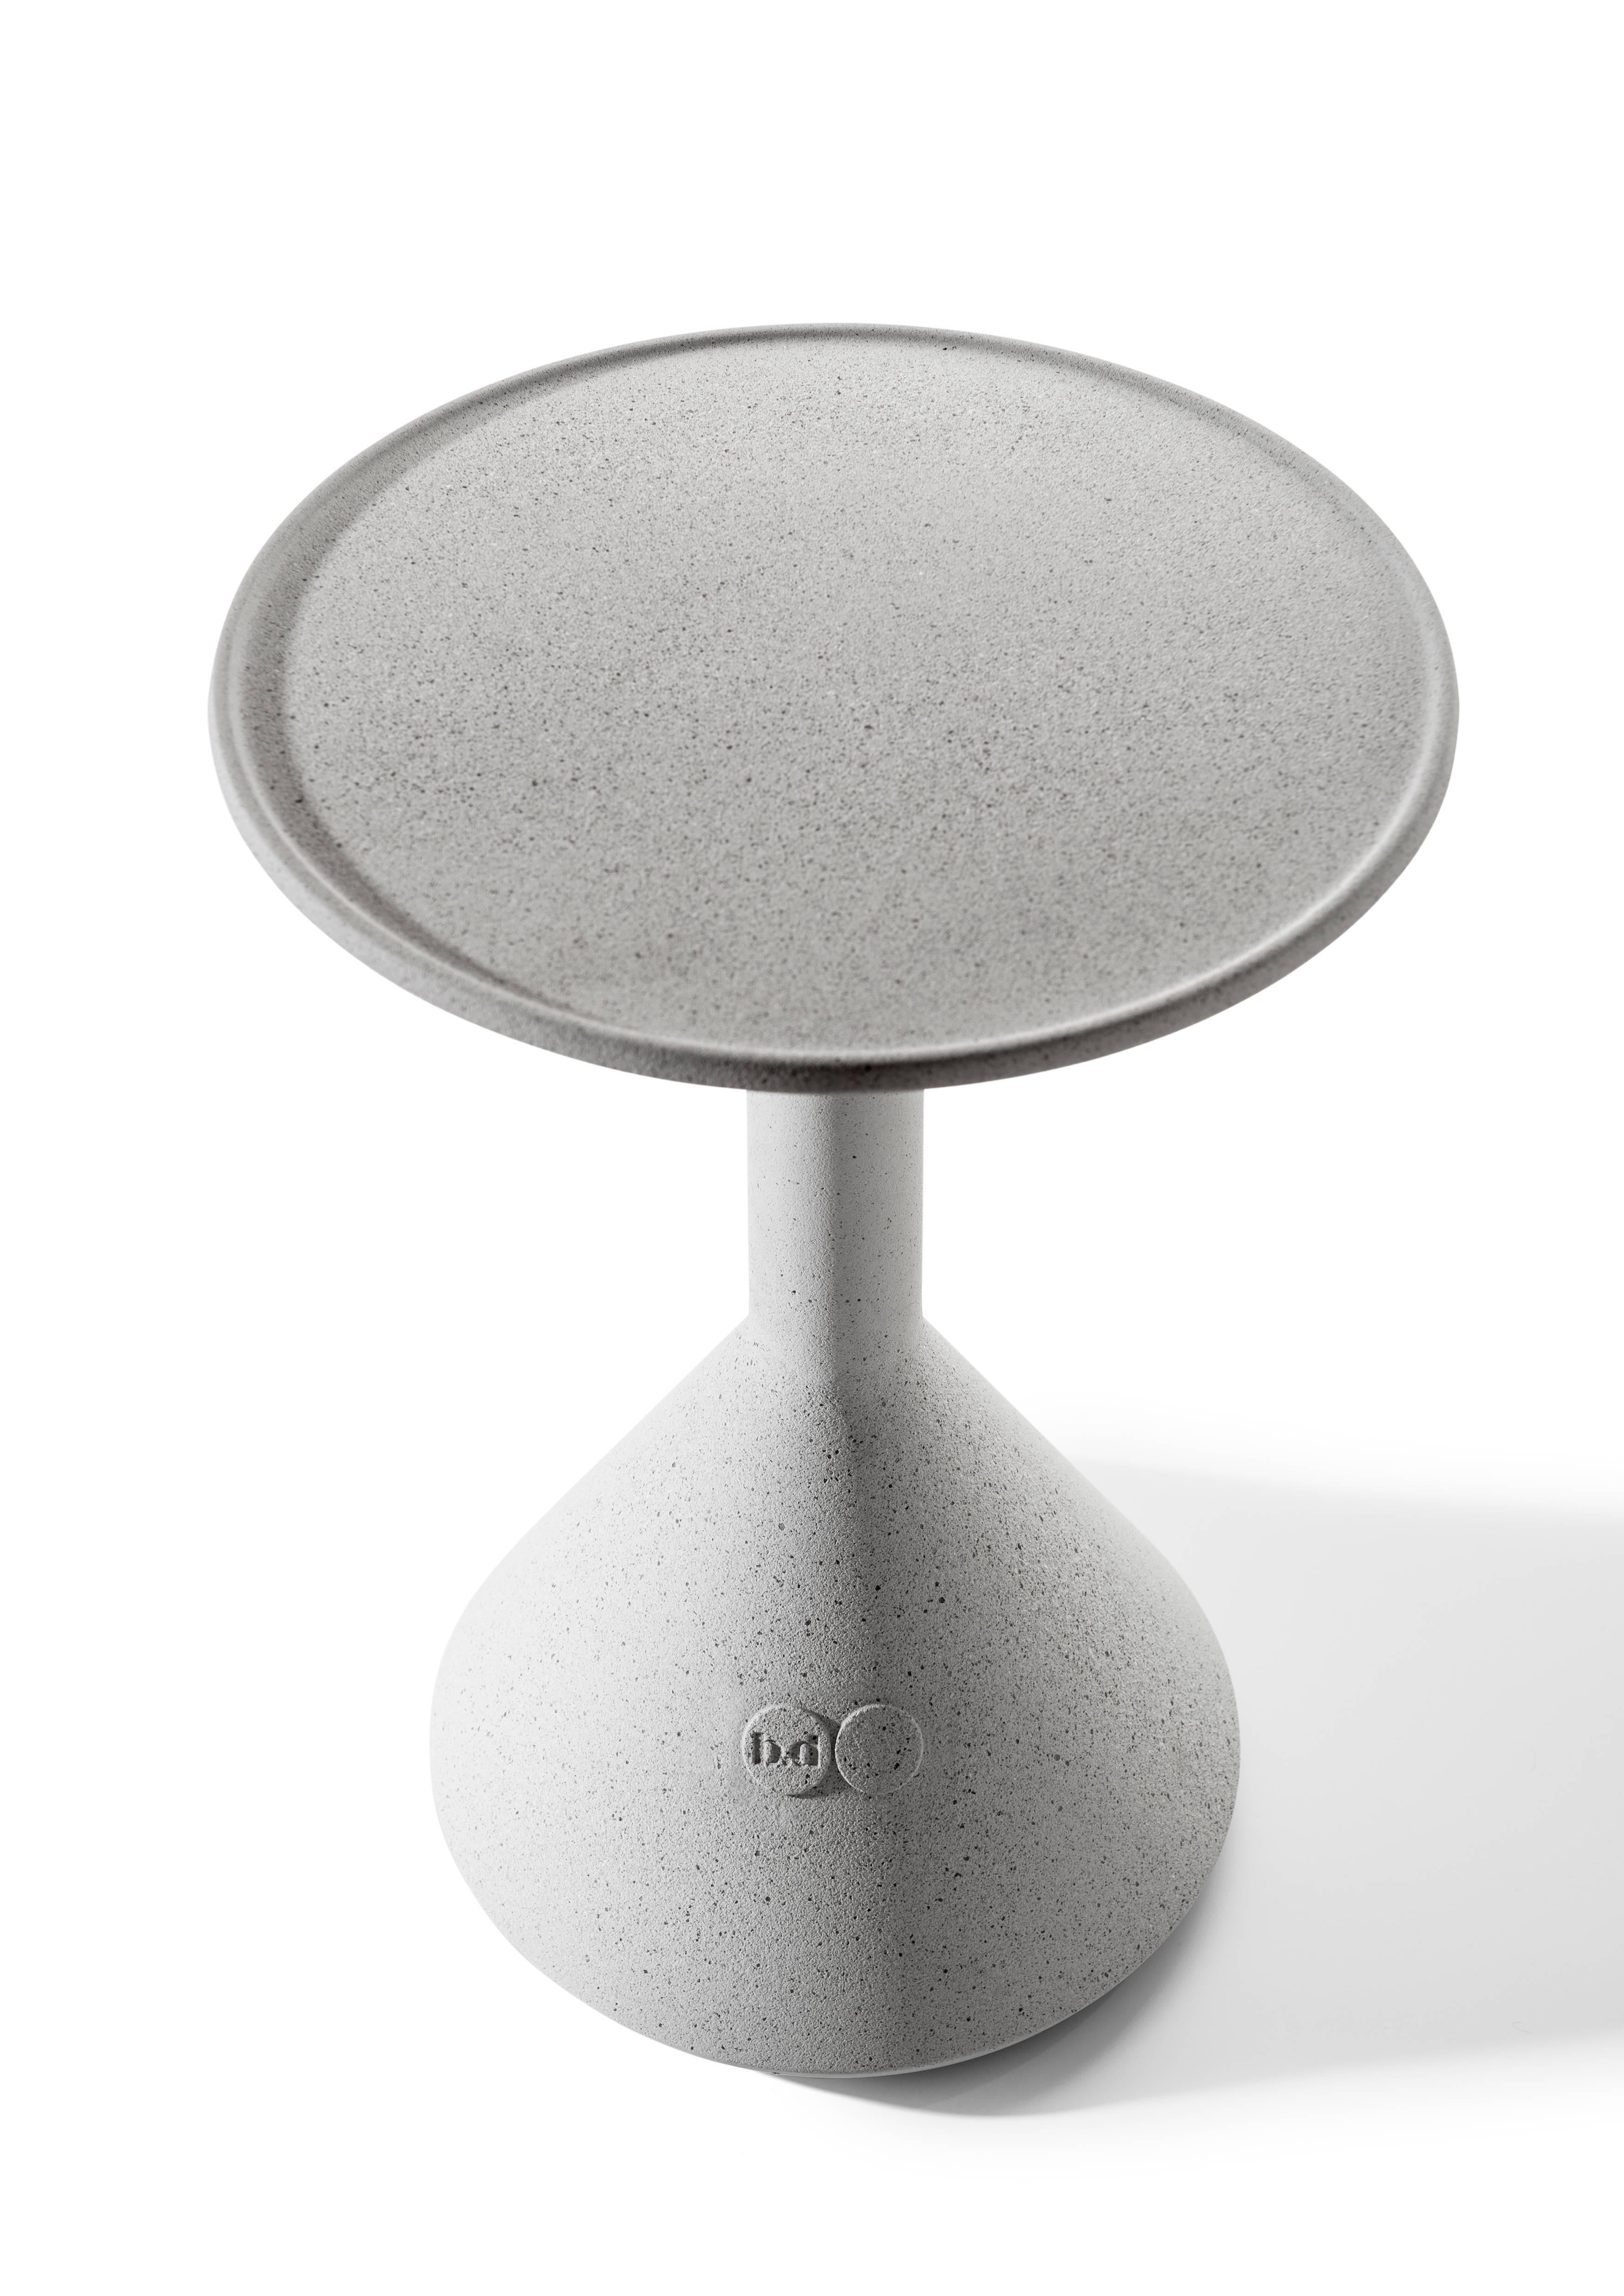 Table d'appoint en ciment massif architectonique de couleur grise.